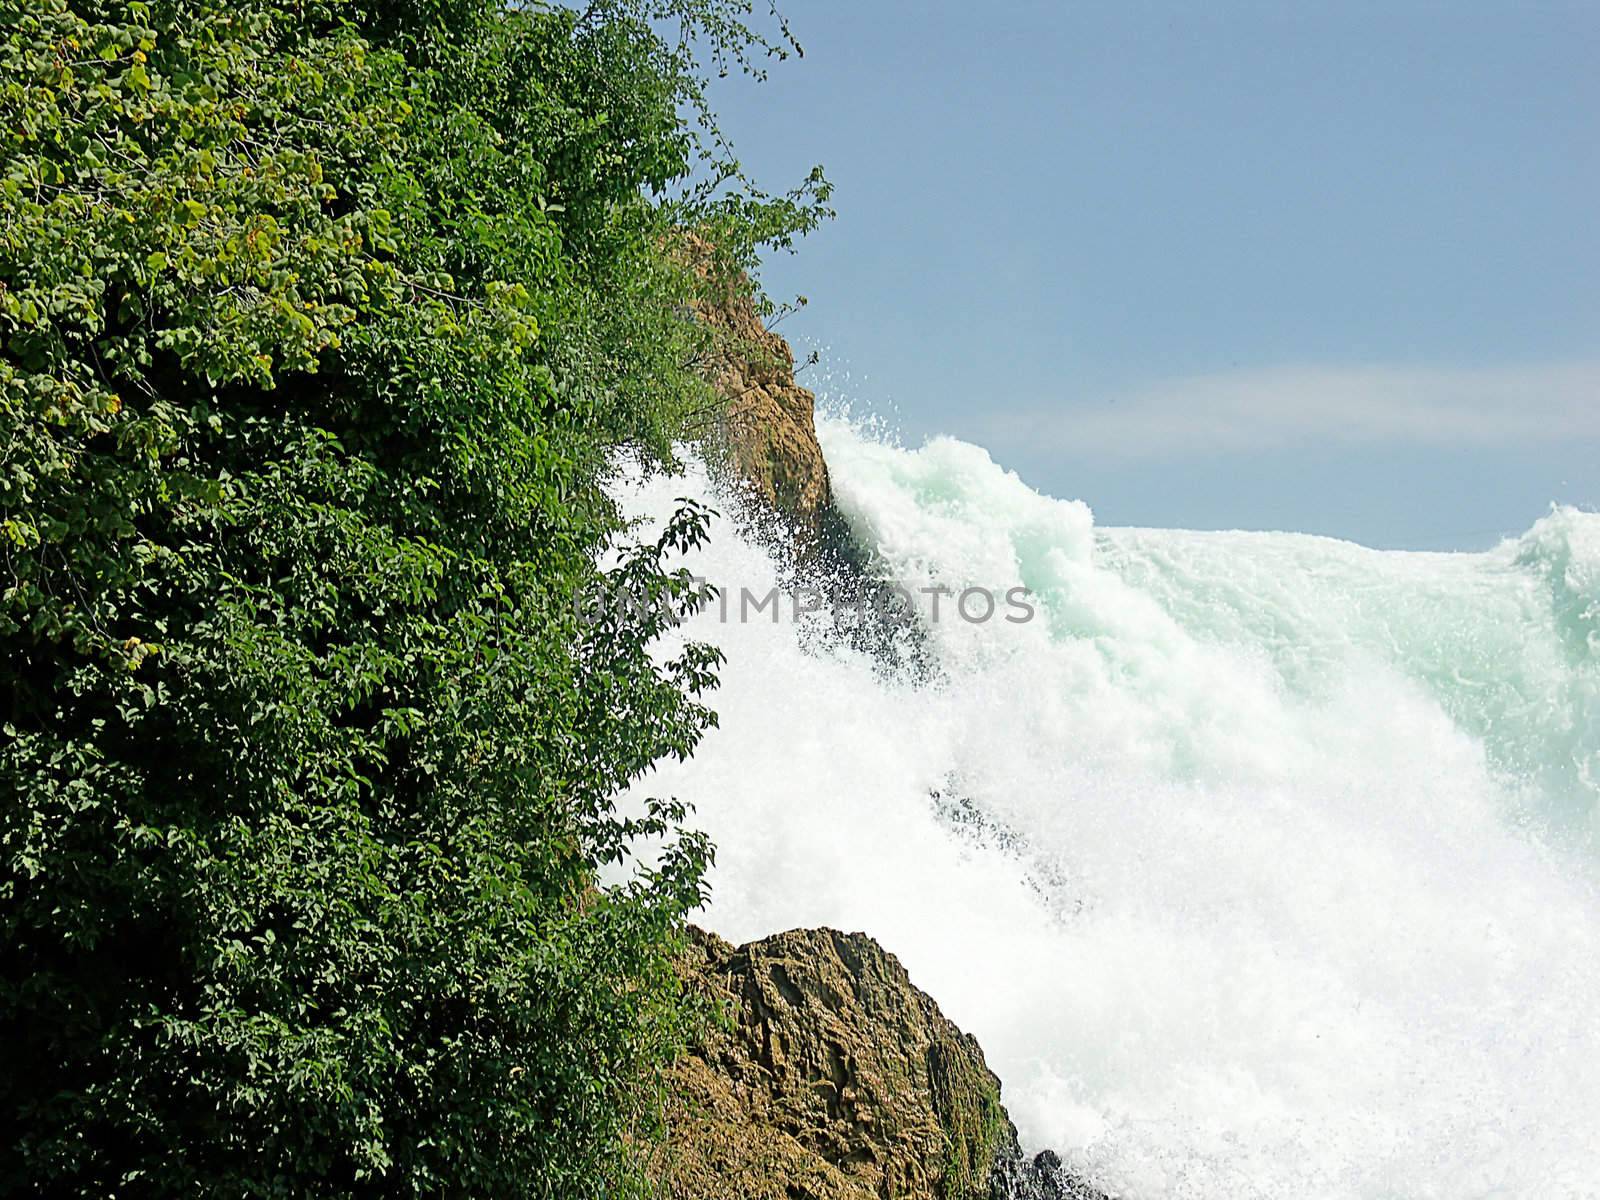 waterfall (rhine falls) 02 by Dan70